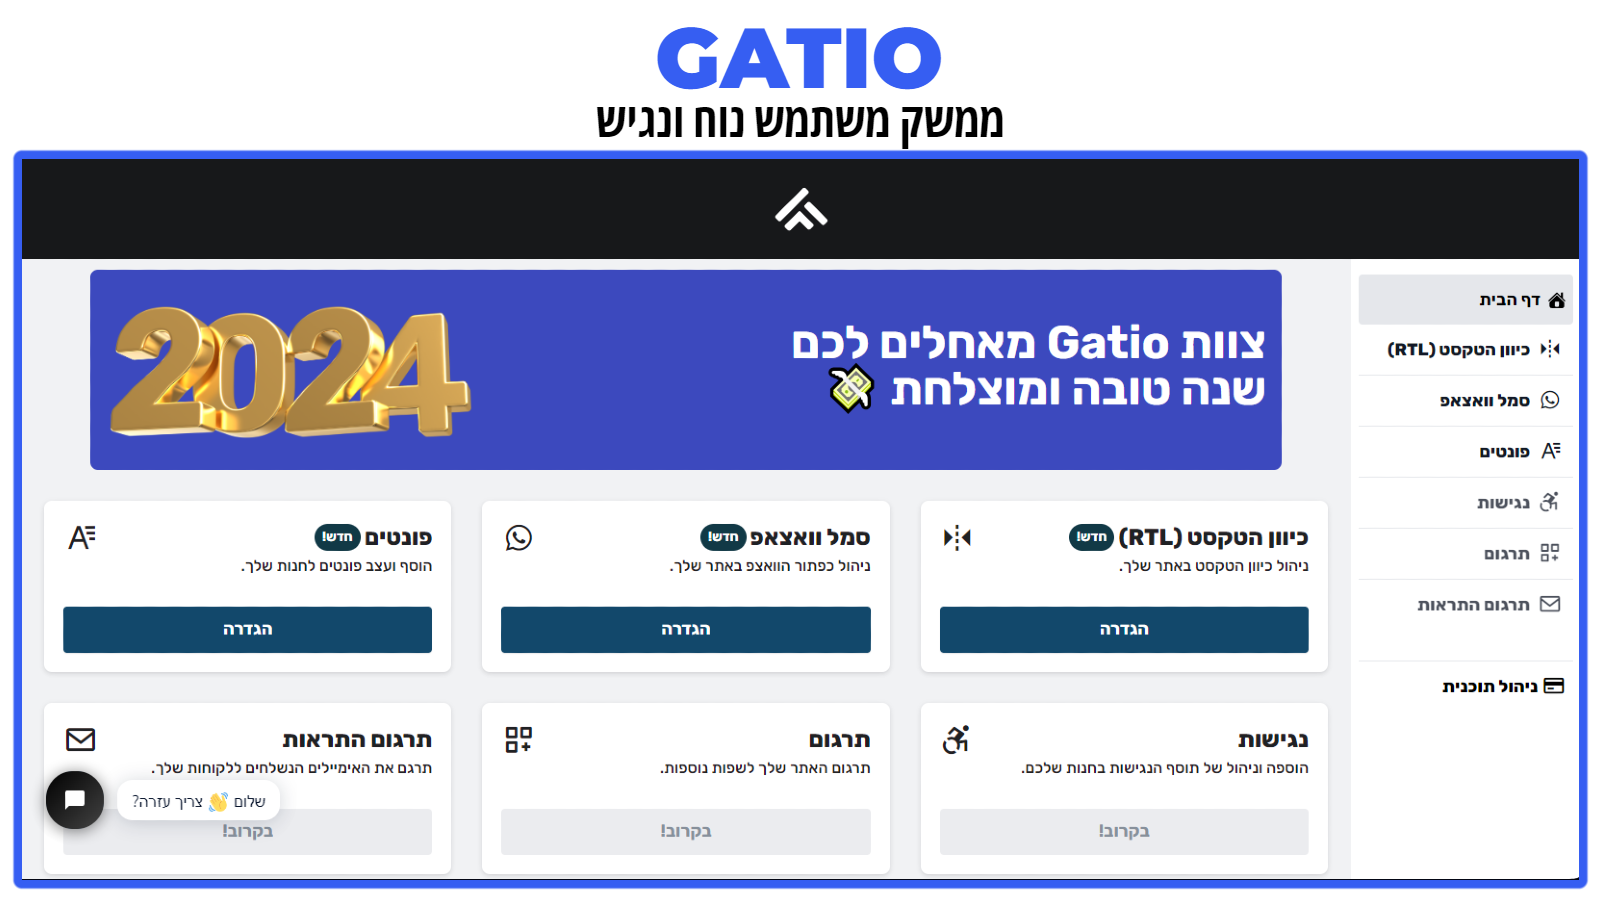 Gatio RTL - Interfaz de usuario simple y rápida